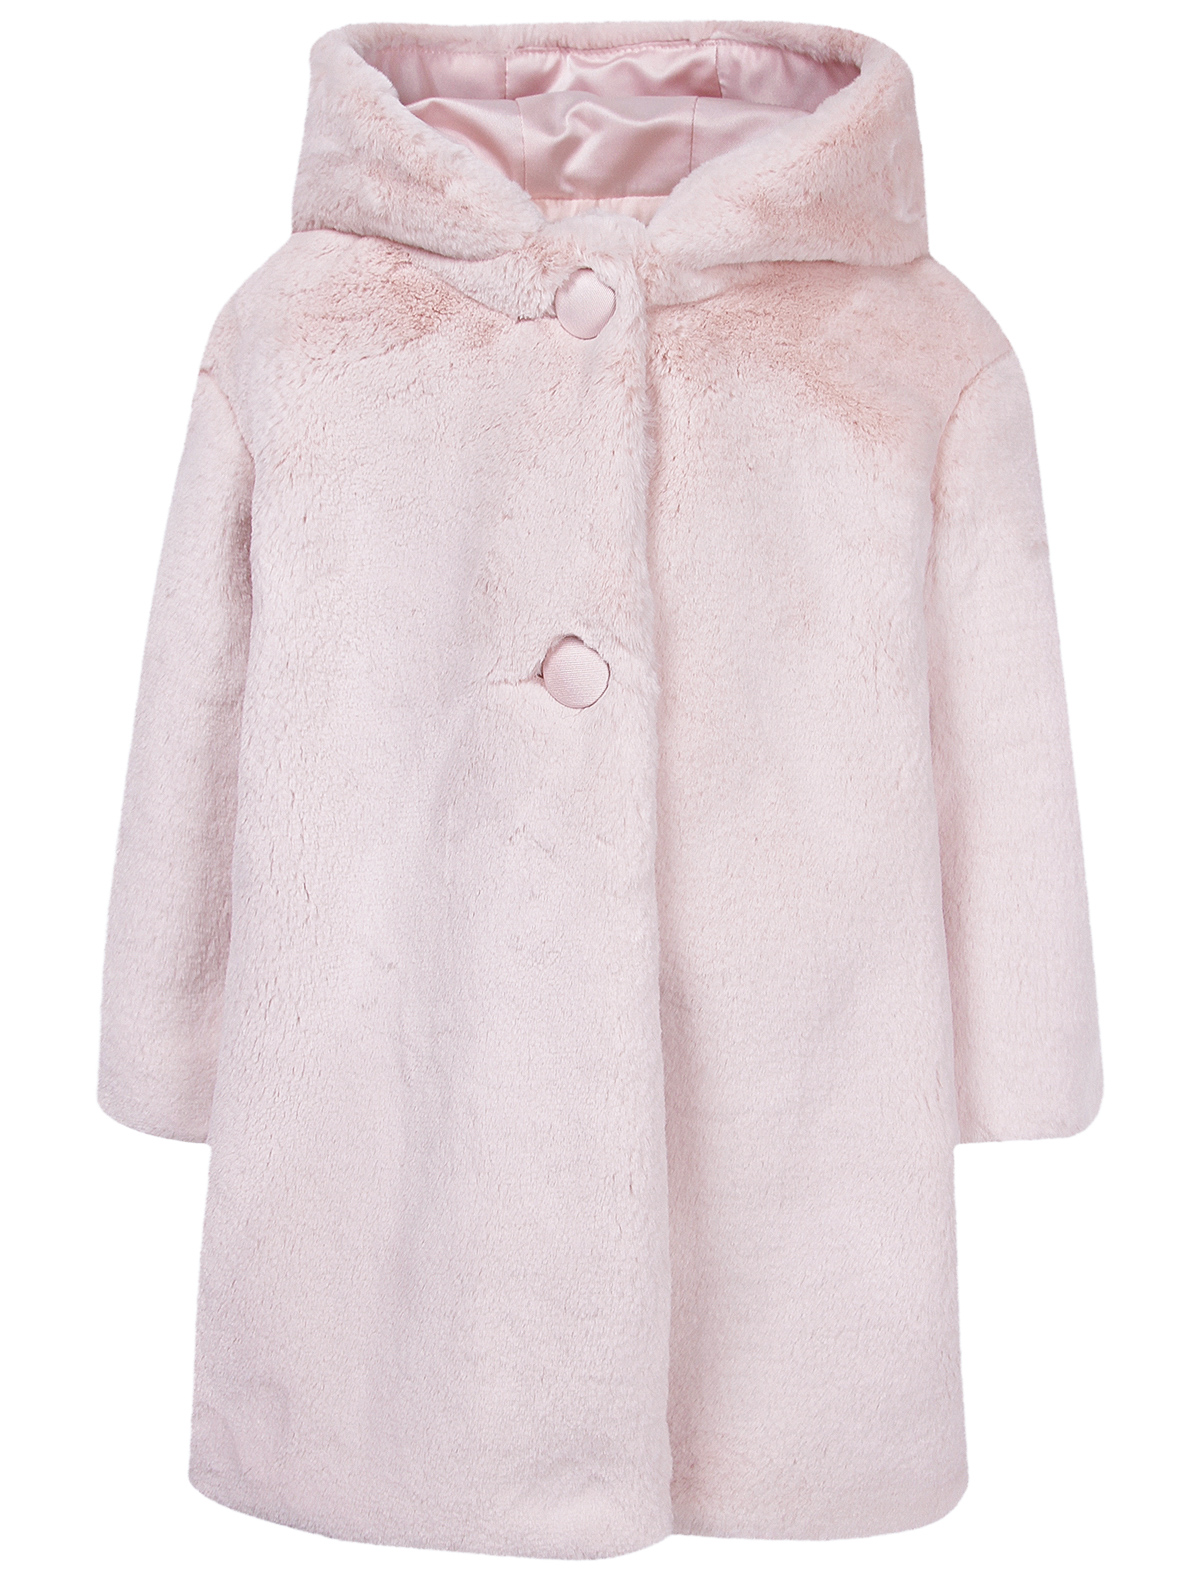 Пальто меховое Colorichiari 2045175, цвет розовый, размер 9 4122609980036 - фото 1